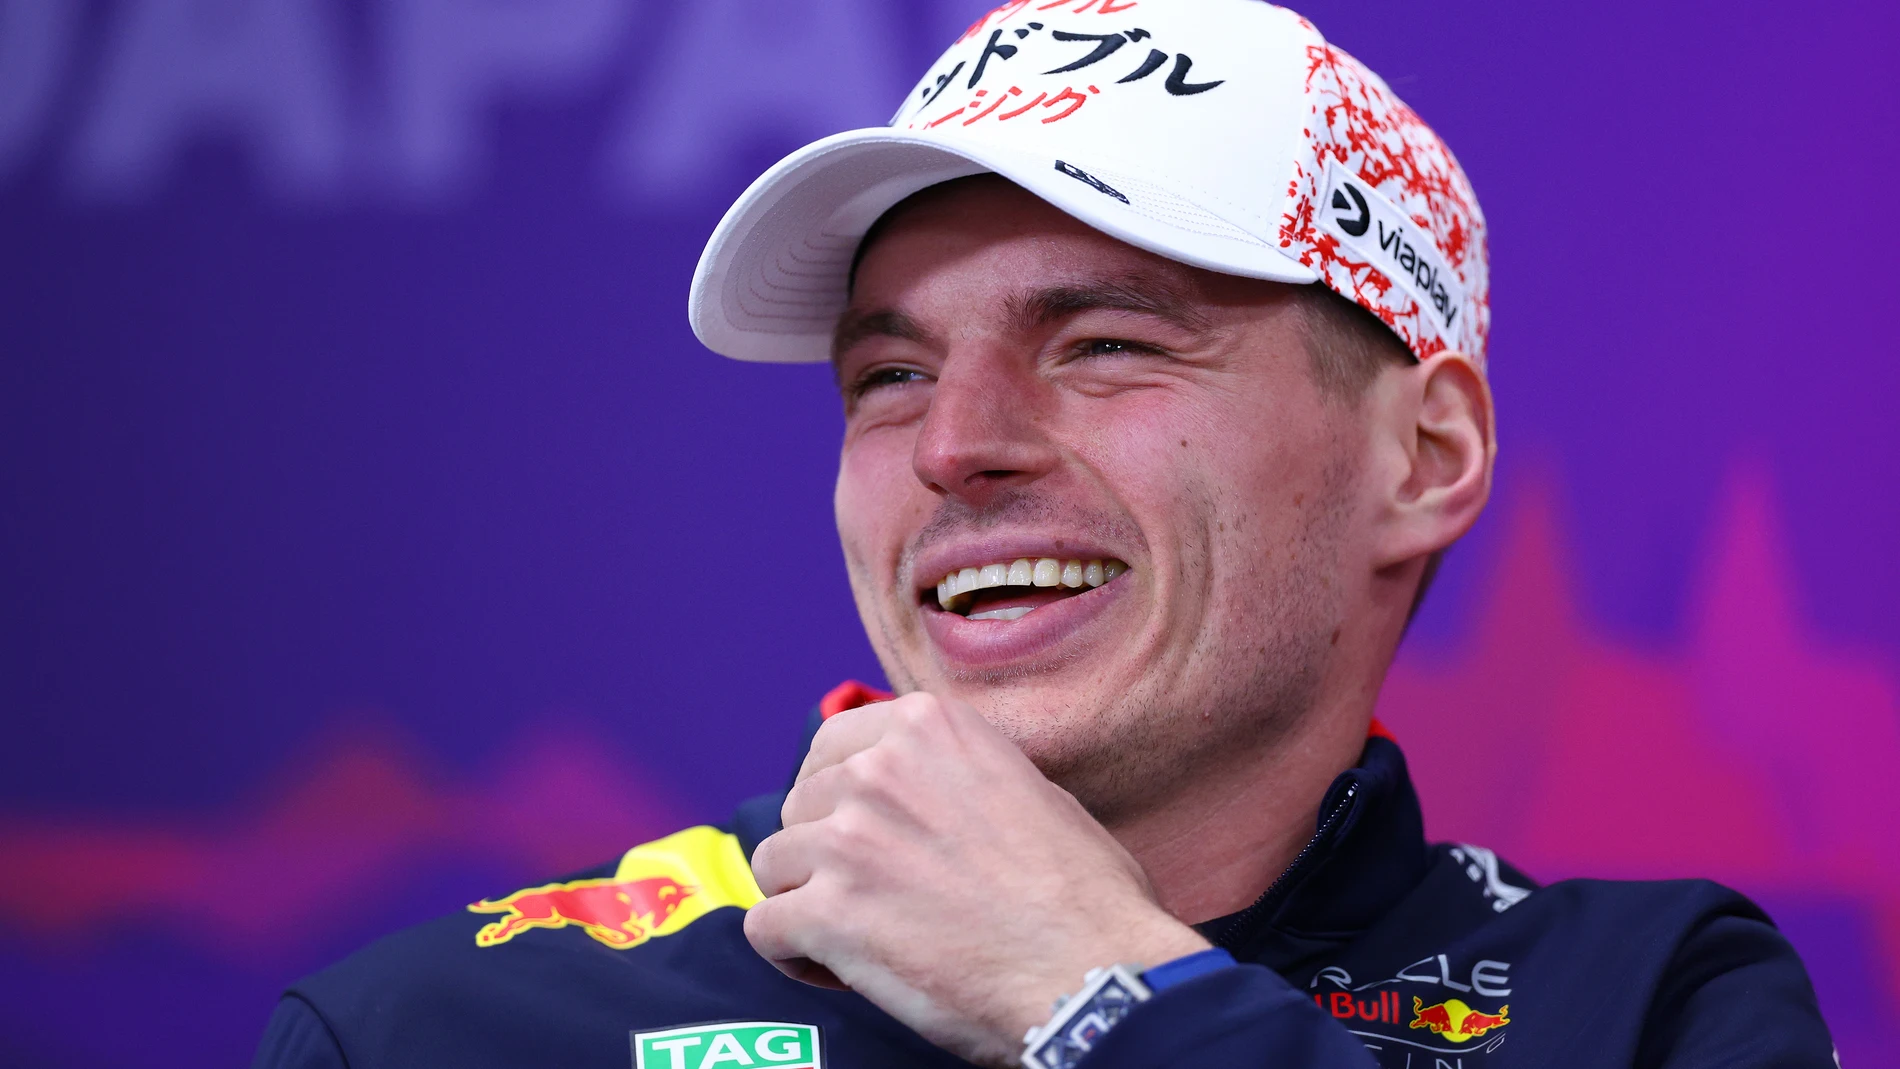 El increíble récord que podría perder Max Verstappen en Japón